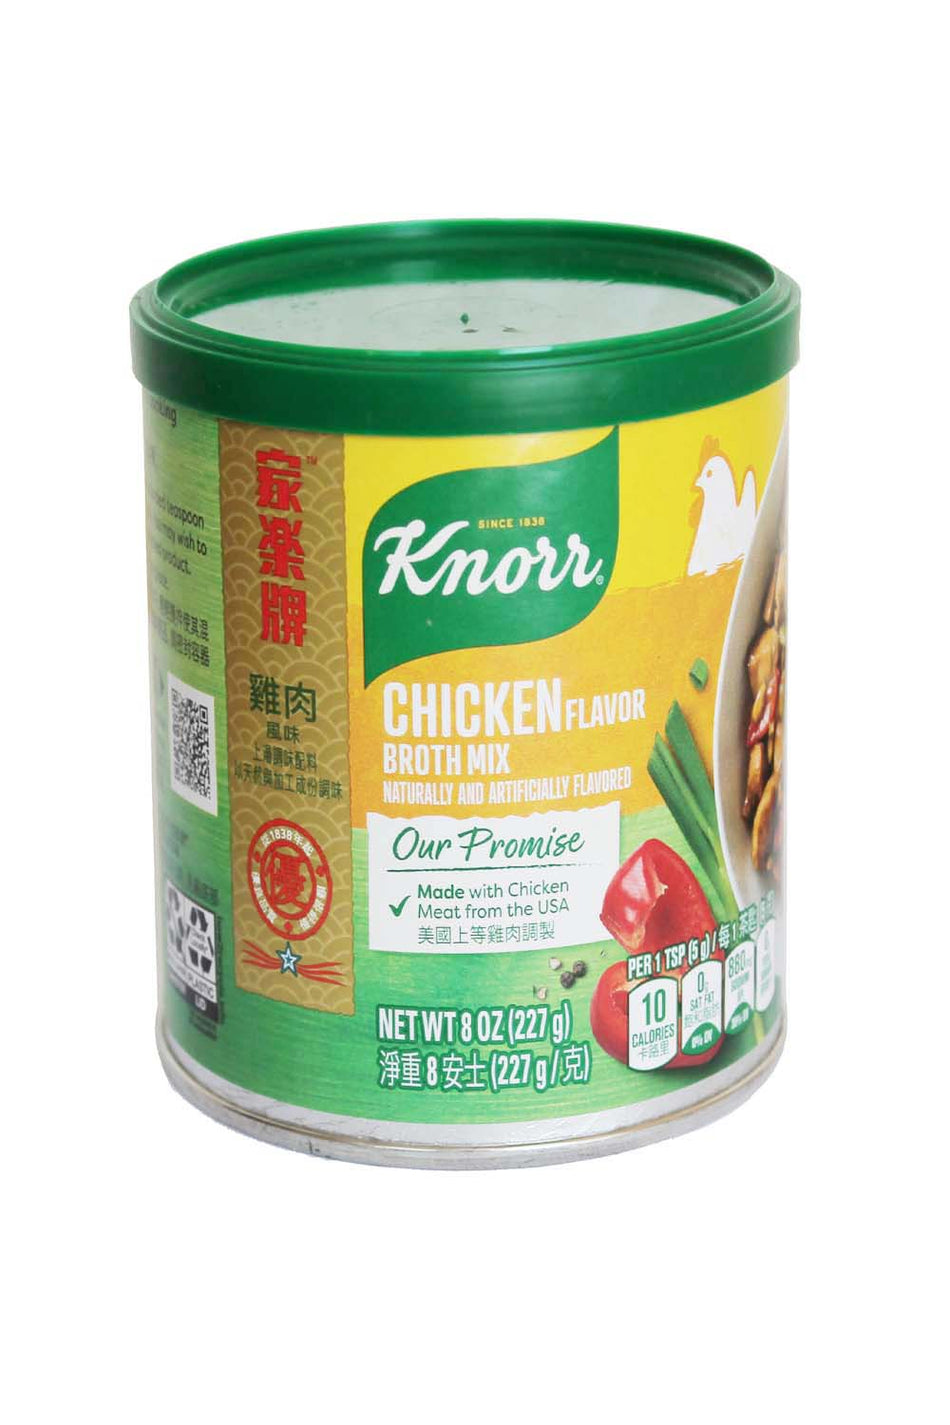 Knorr Chicken Flavor Both Mix